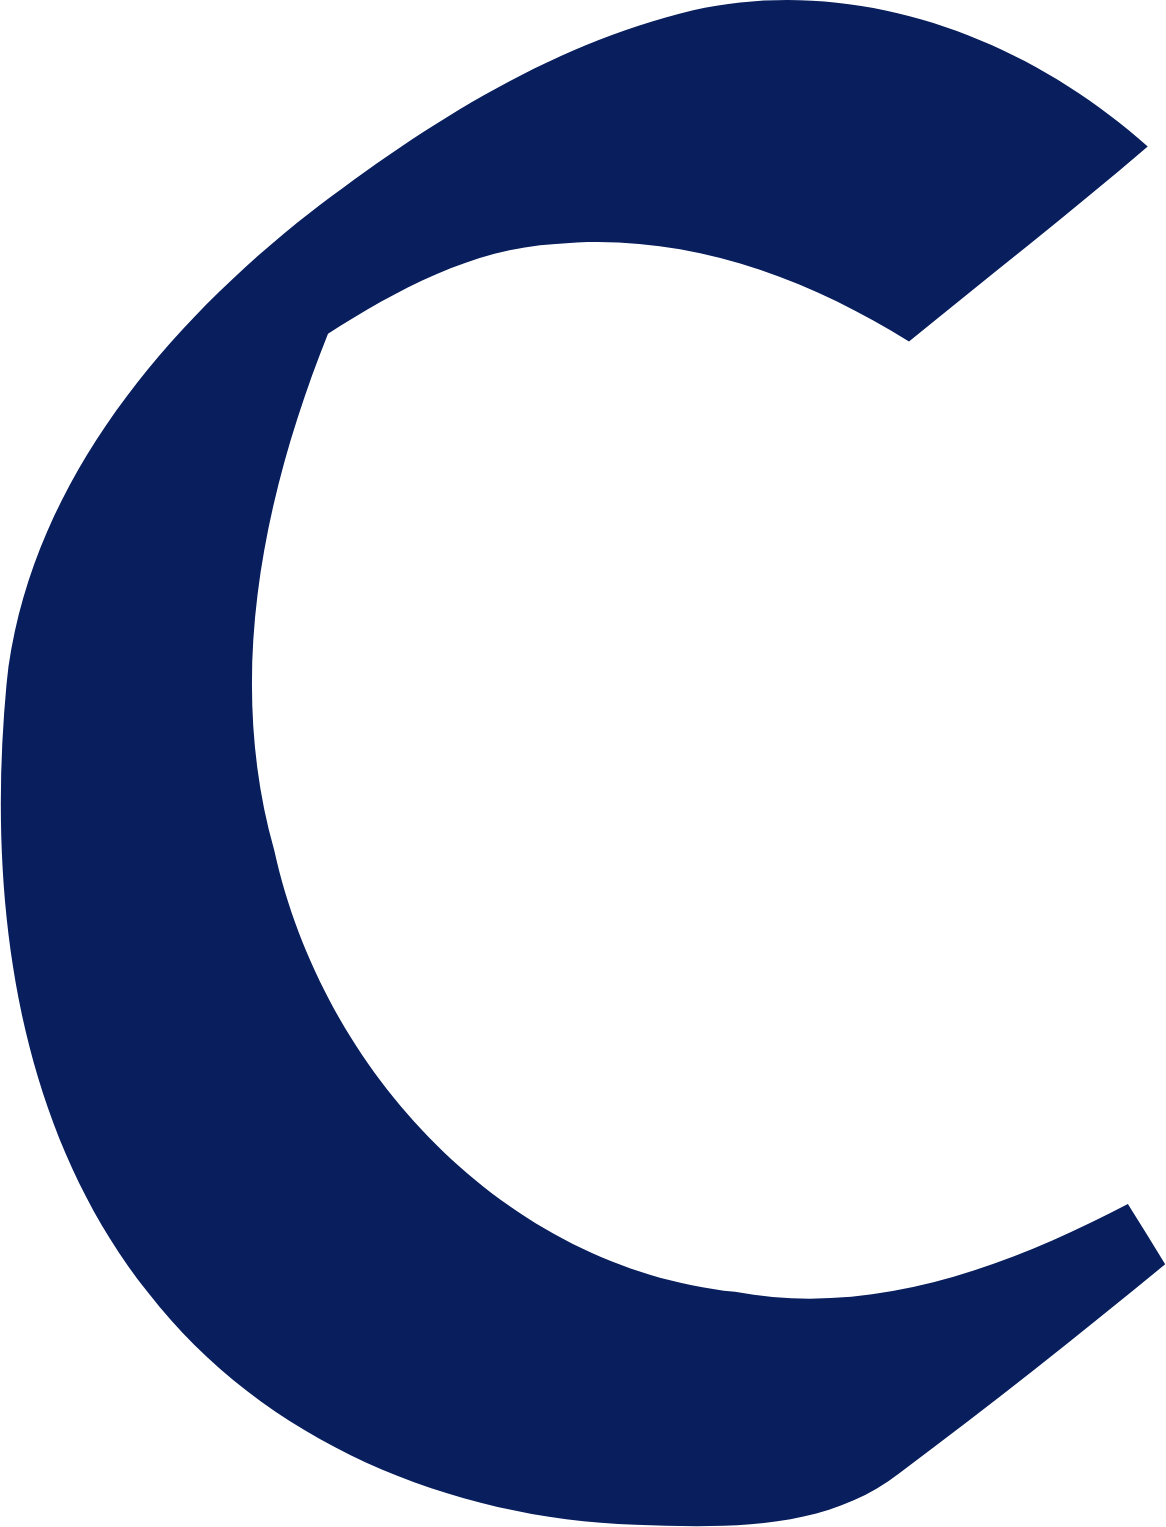 Central Securities logo (PNG transparent)